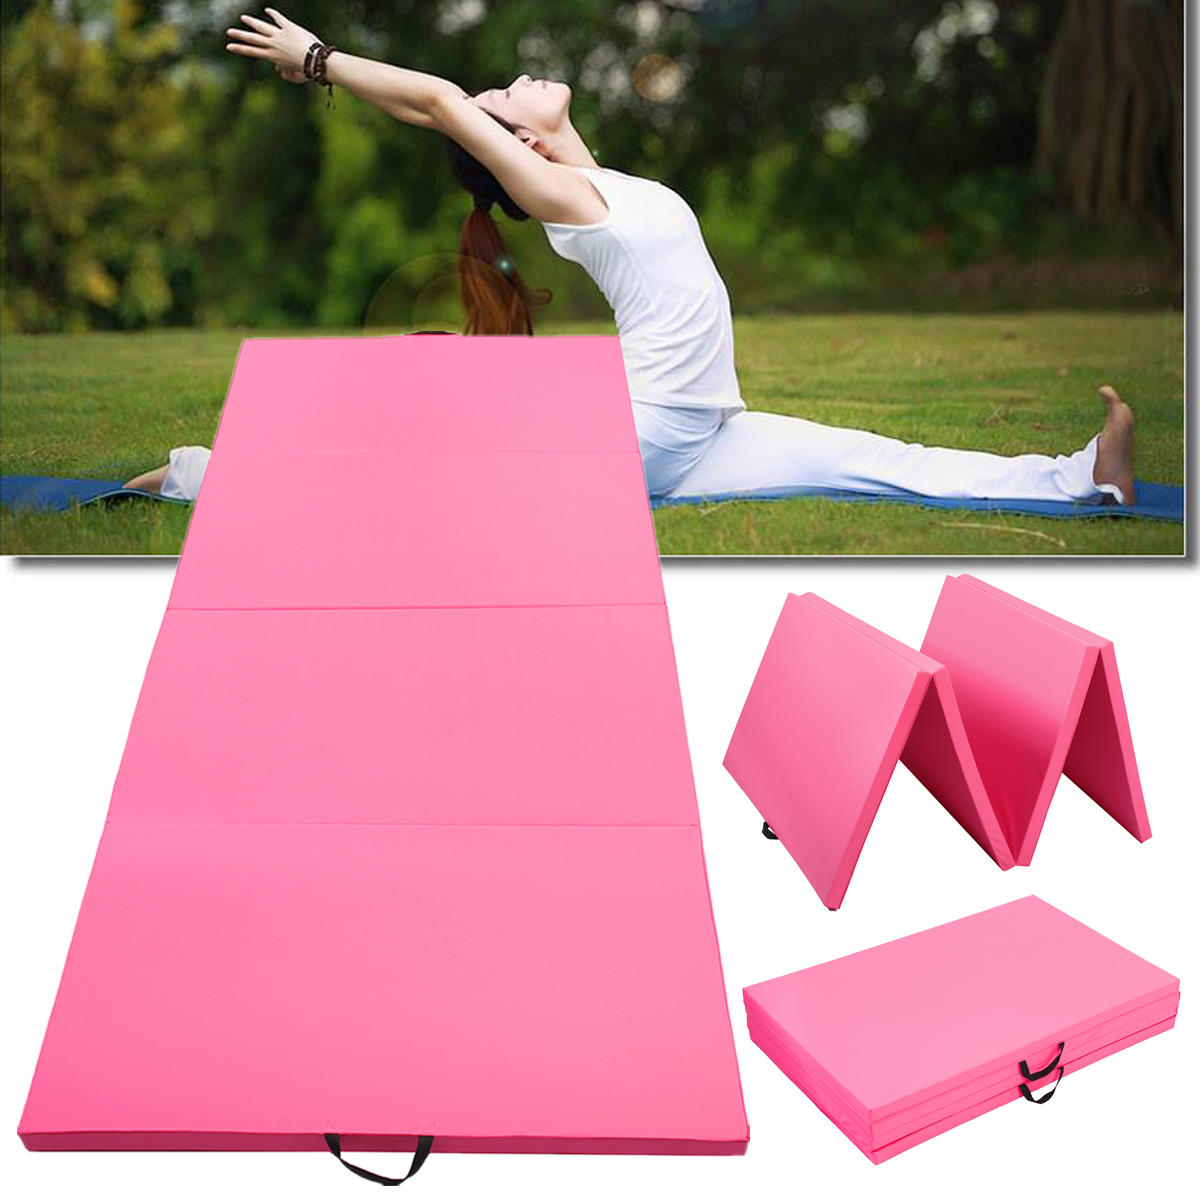 Tapis de gymnastique pliable super grand à 4 couches pour yoga et exercices de gymnastique de 300x120x5 cm rose